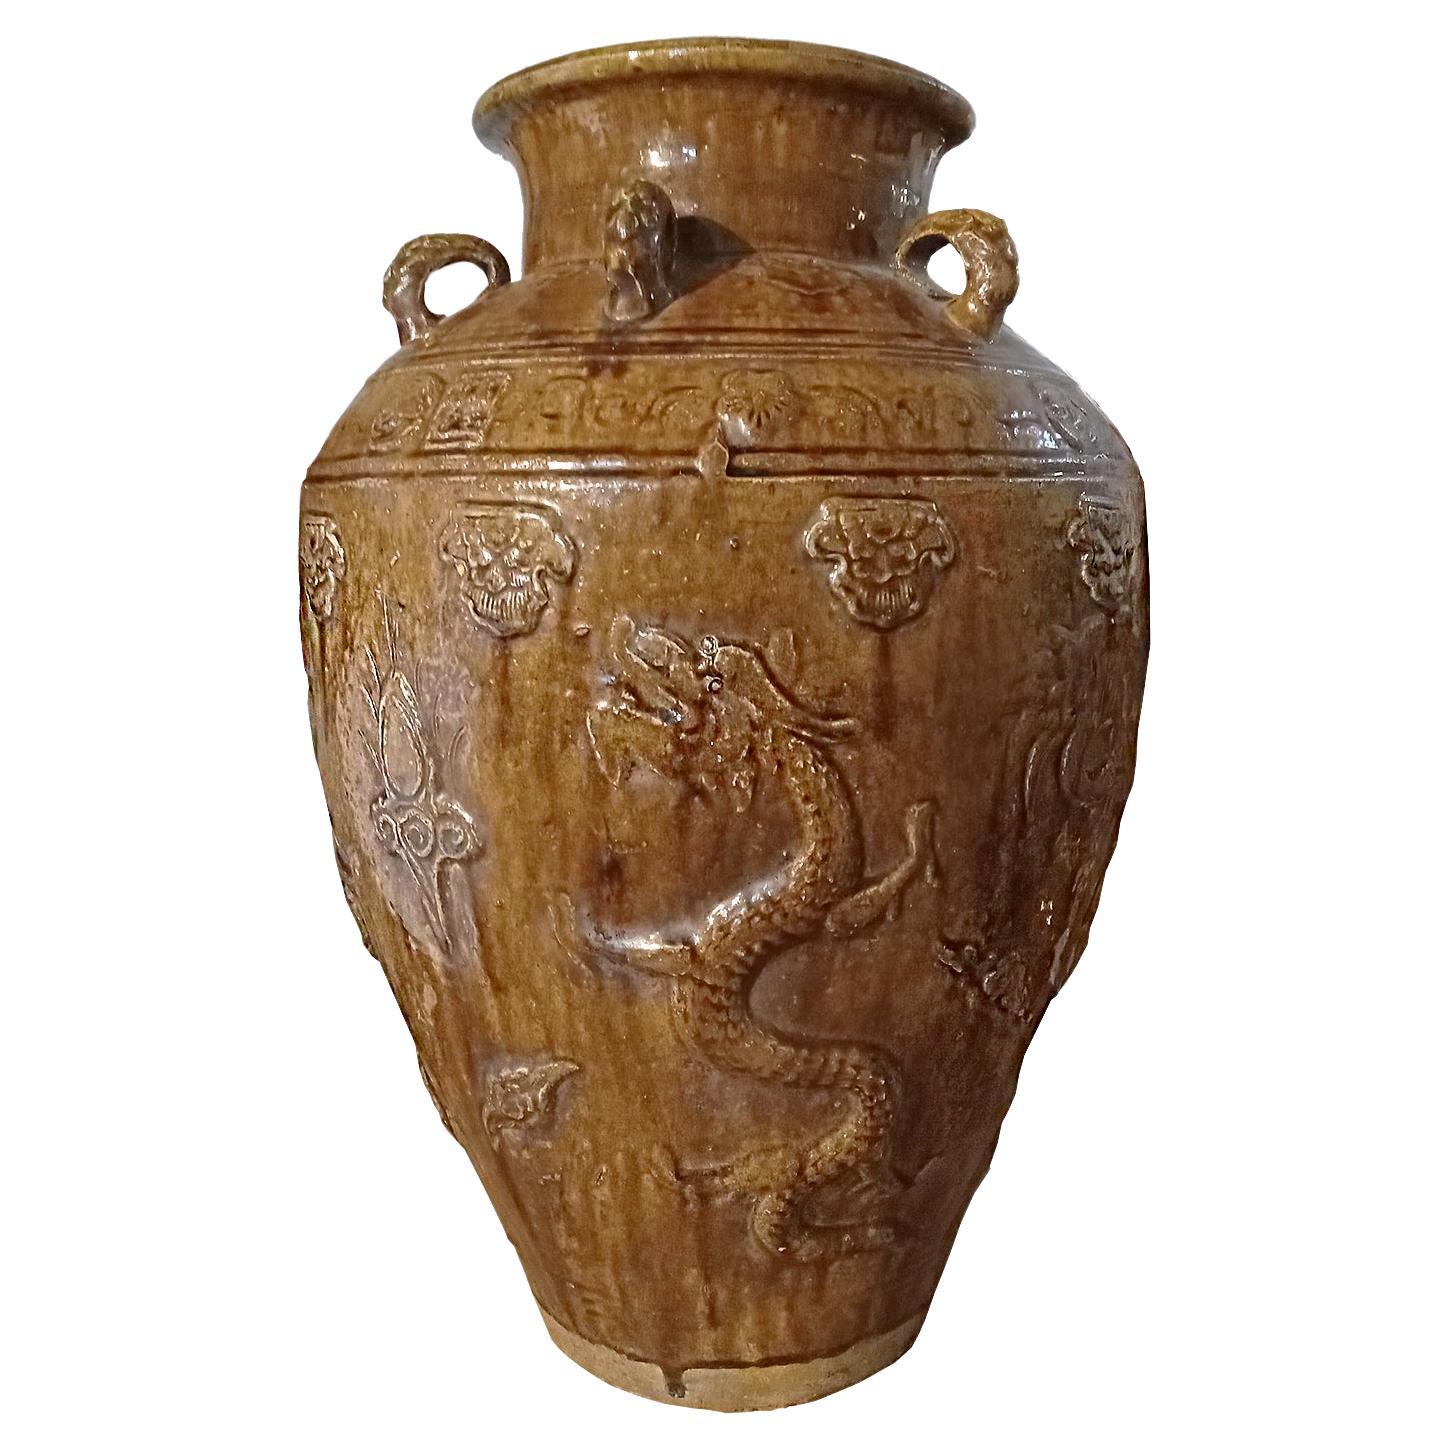 Indonesische Terrakotta Urne / JAR / Vase mit brauner Glasur und Drachenmotiv